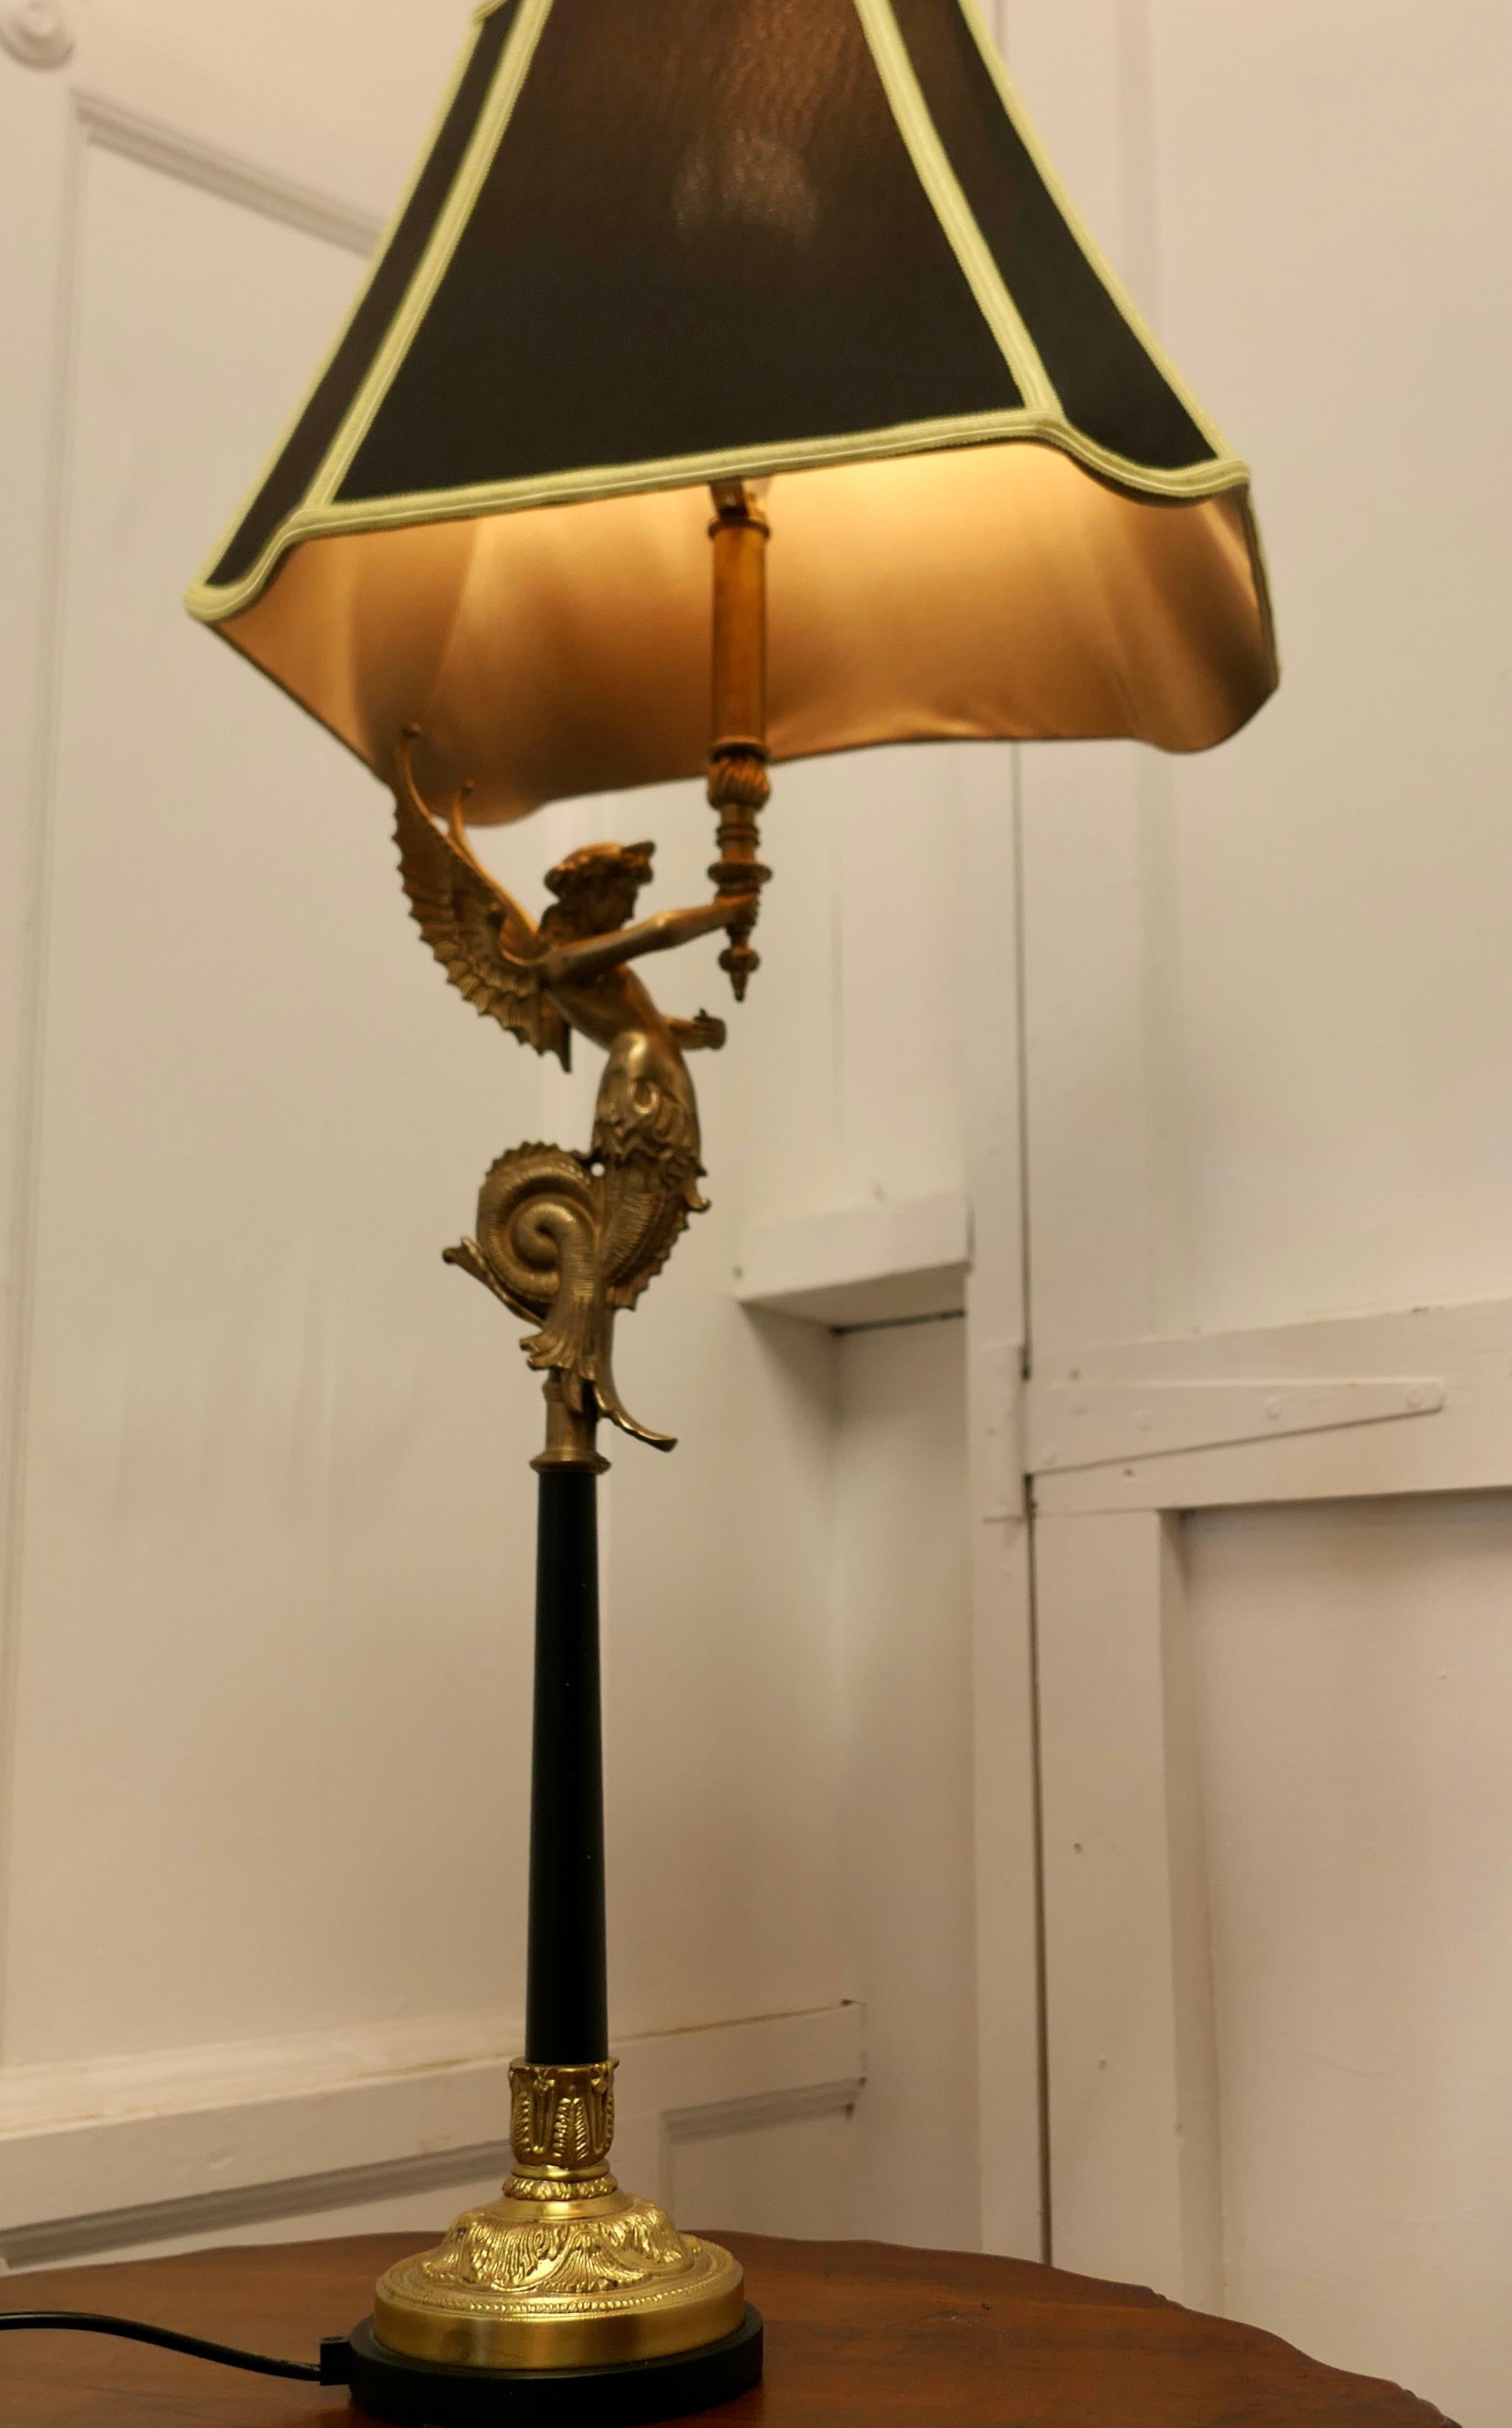  Lampe figurative en ormolu de style Empire français avec sirène  

Une charmante lampe en laiton d'un mètre de haut, l'abat-jour en soie est soutenu par la statue d'une sirène en laiton posée sur une colonne noire. 
La lampe fonctionne parfaitement